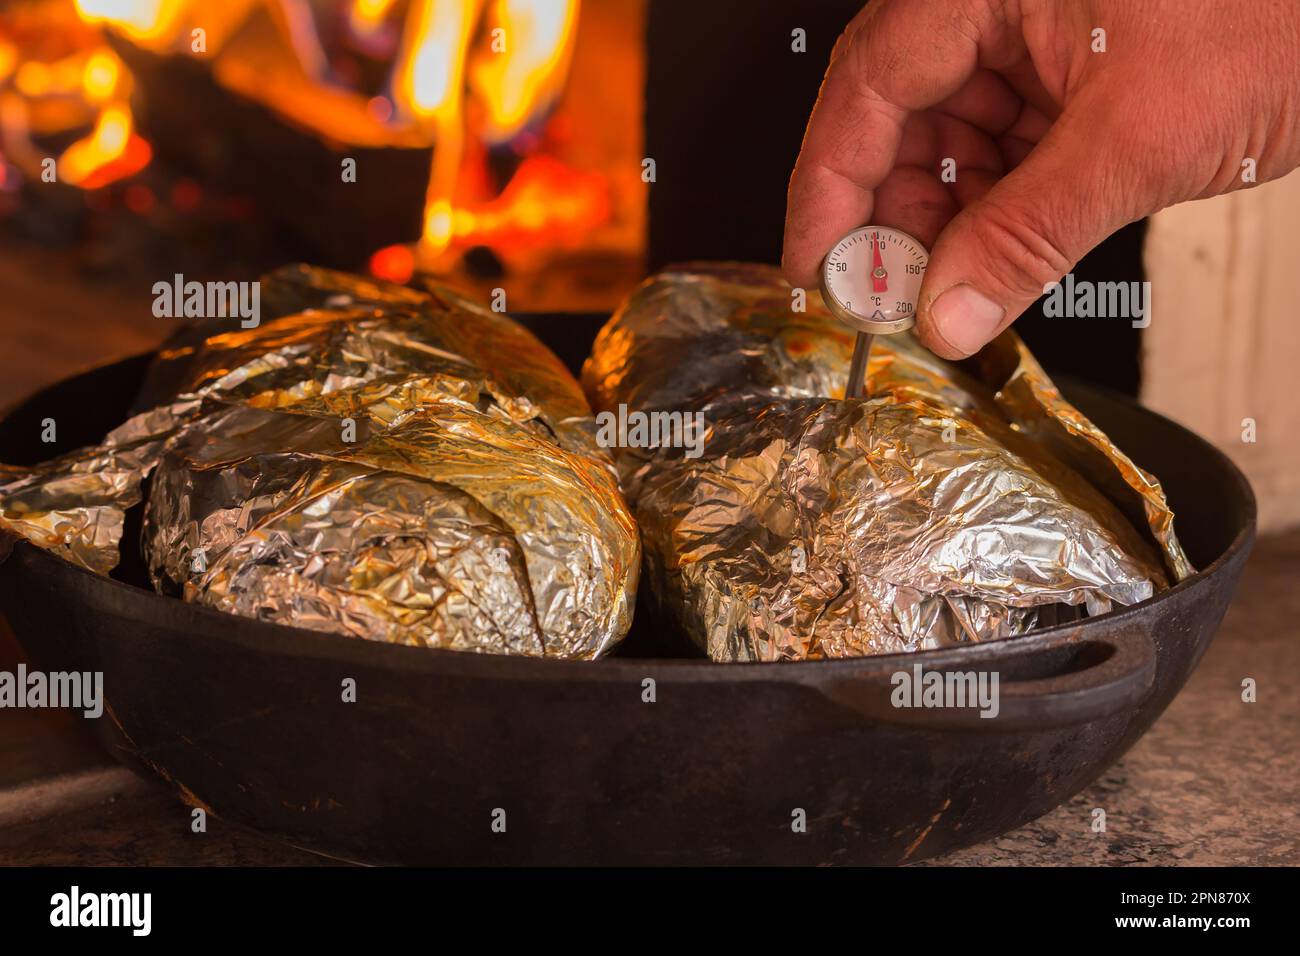 Le processus de cuisson de la viande. Accueil cuisine Recettes Banque D'Images